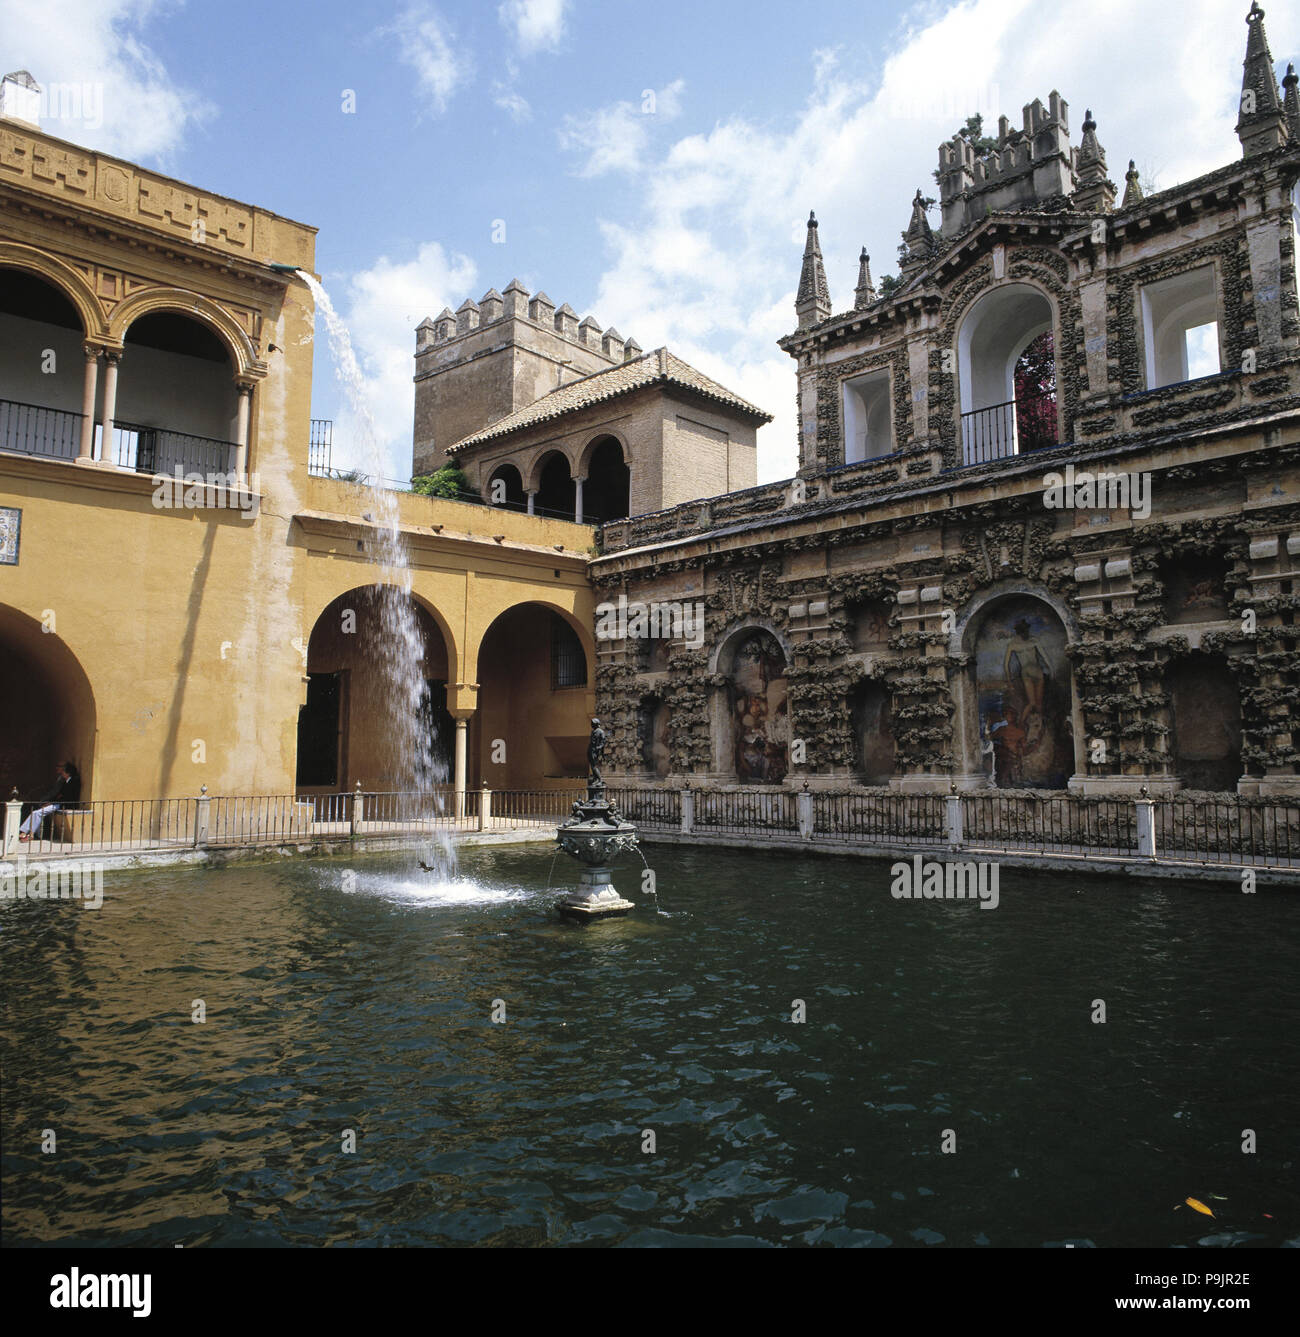 Alcázar von Sevilla, Palast von König Don Pedro, Teich im Garten. Stockfoto